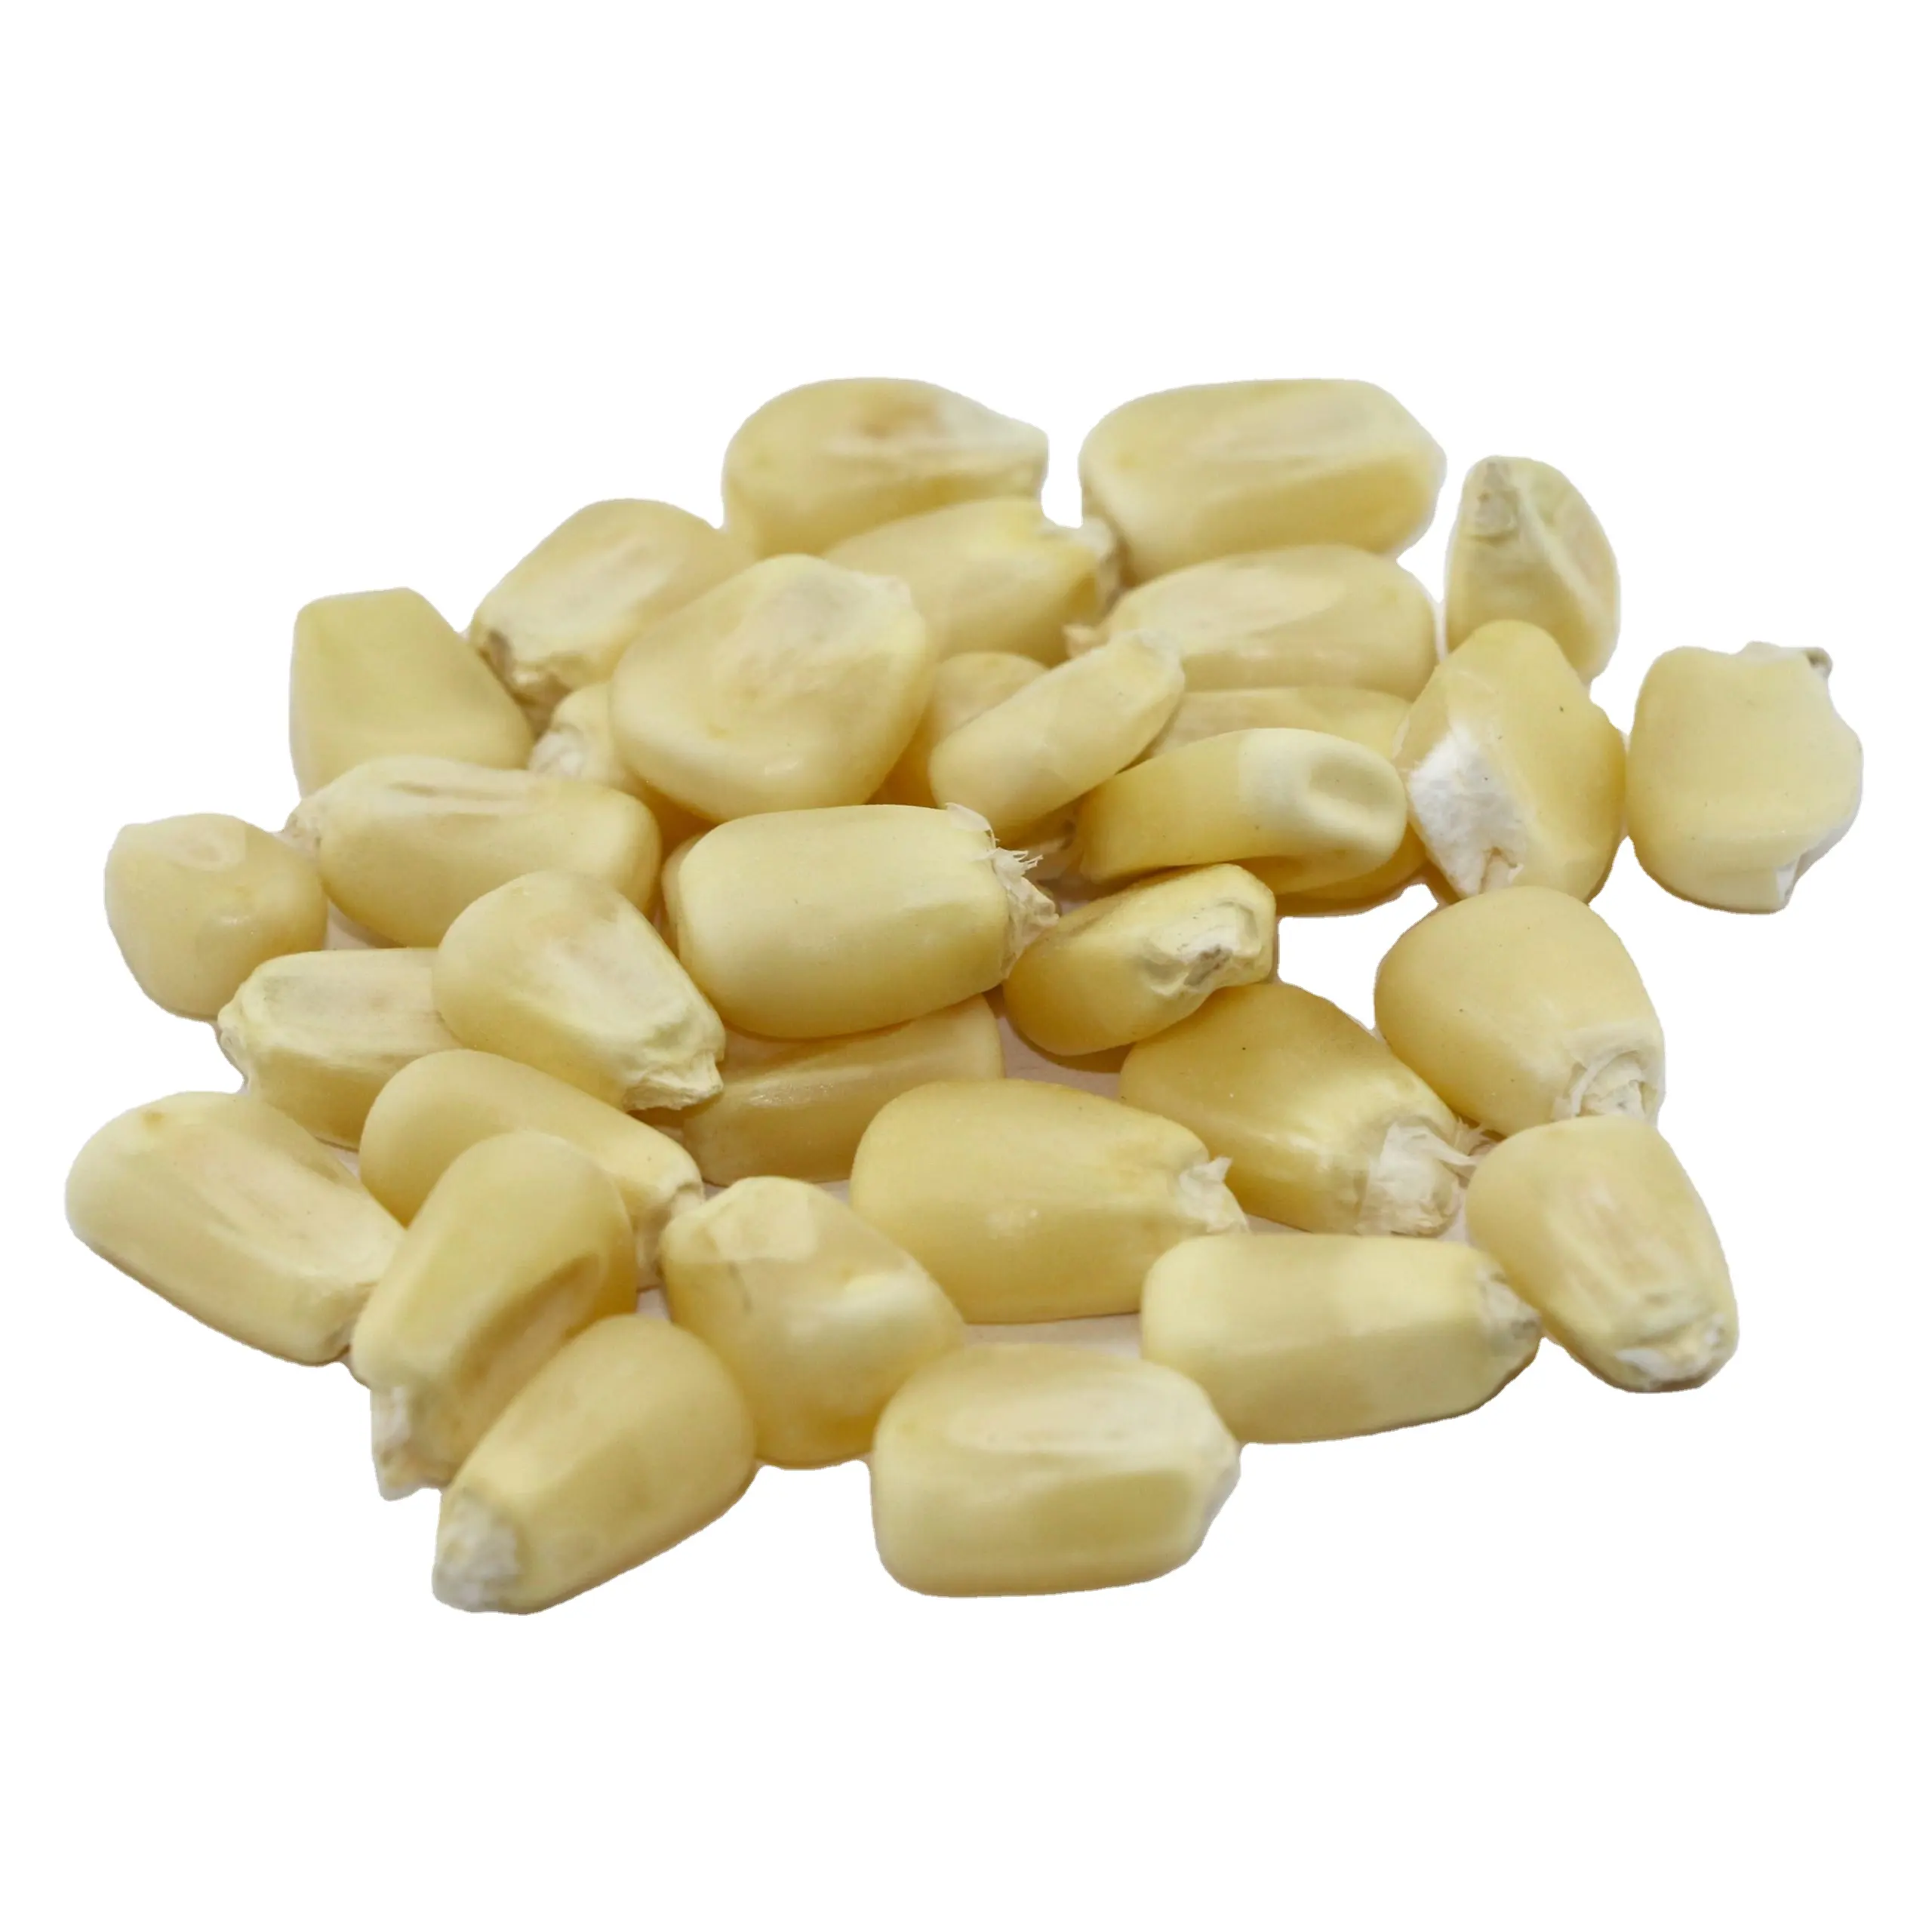 1バルクGMO/非GMO黄色および白トウモロコシ穀物、トウモロコシミール、トウモロコシ粉、小麦粉輸出業者のサプライヤー